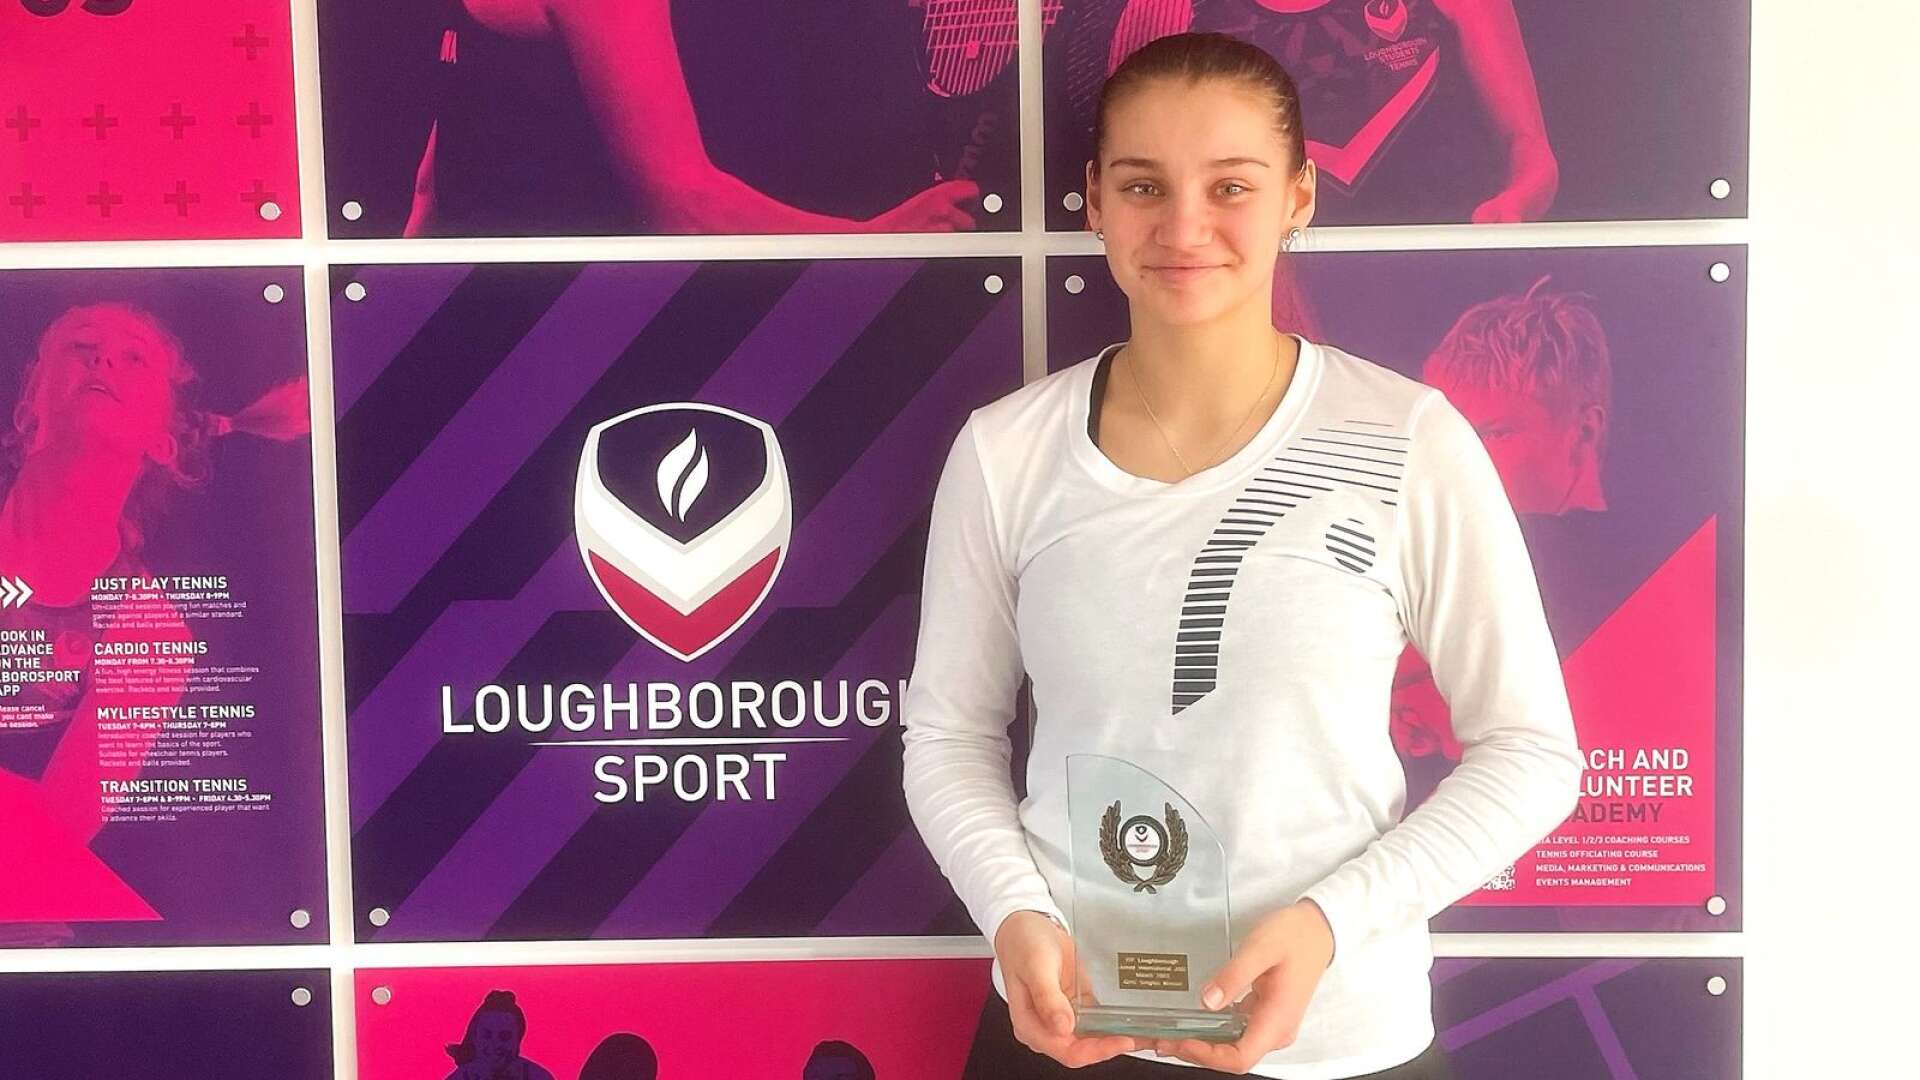 Åmålstjejen Bella Bergkvist Larsson, som tävlar för Helsingborgs TK, vann en J100-turnering i Loughborough i Storbritannien och avancerar till plats 251 på ITF:s världsranking för juniorer.